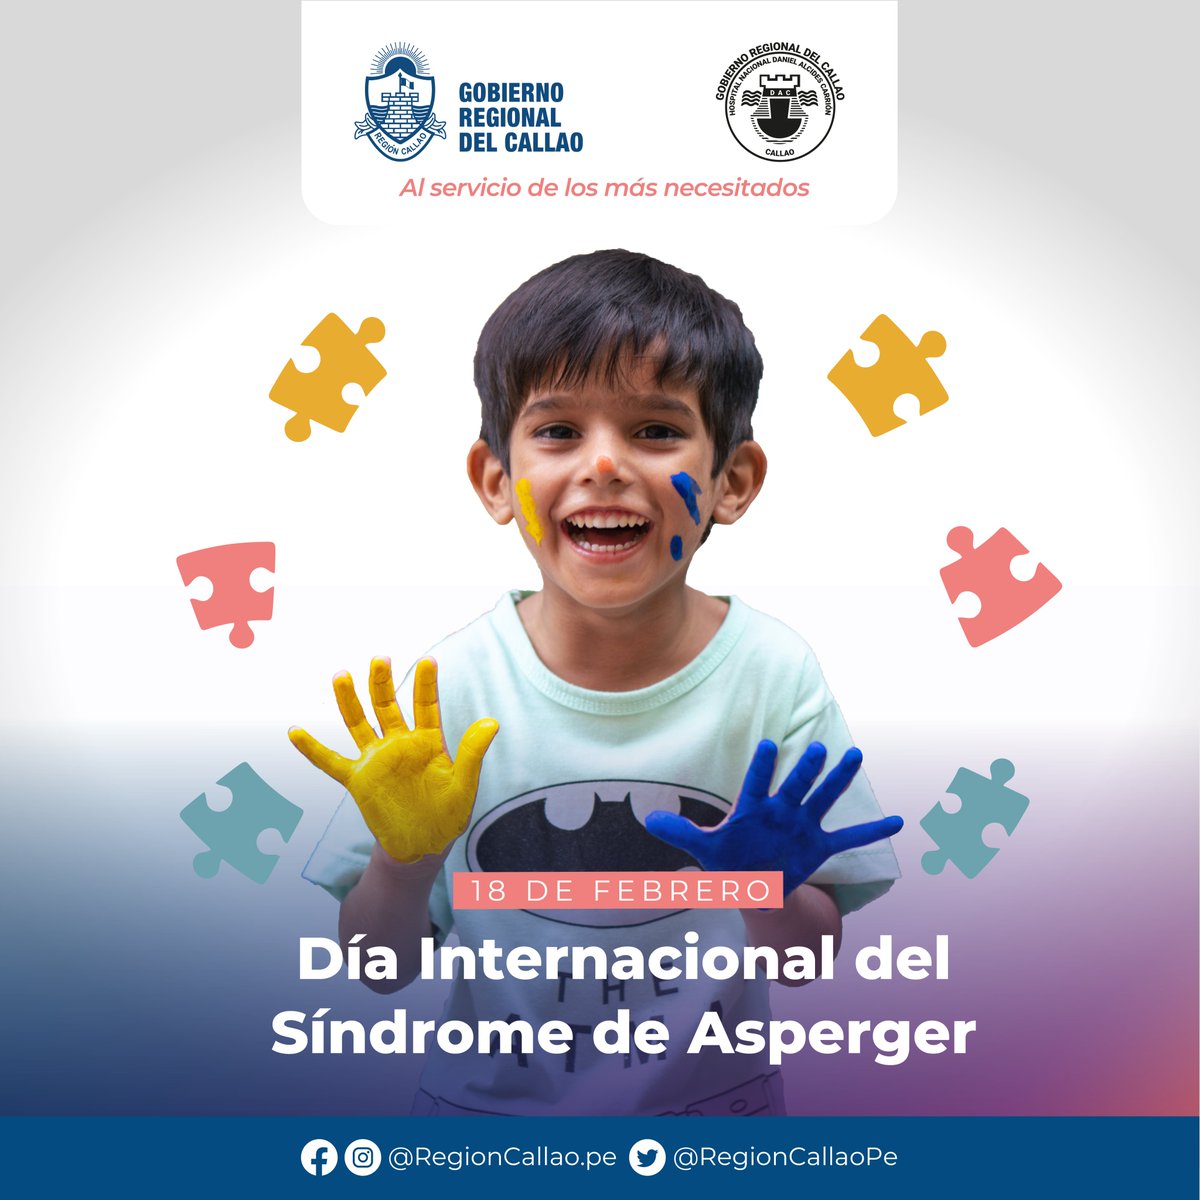 🗓 #Efemérides Día Internacional del Síndrome de Asperger / 18 de febrero

¡Si enseñas a no excluir, no necesitaremos hablar de inclusión!  #TuSaludPrimero #YoIncluyo